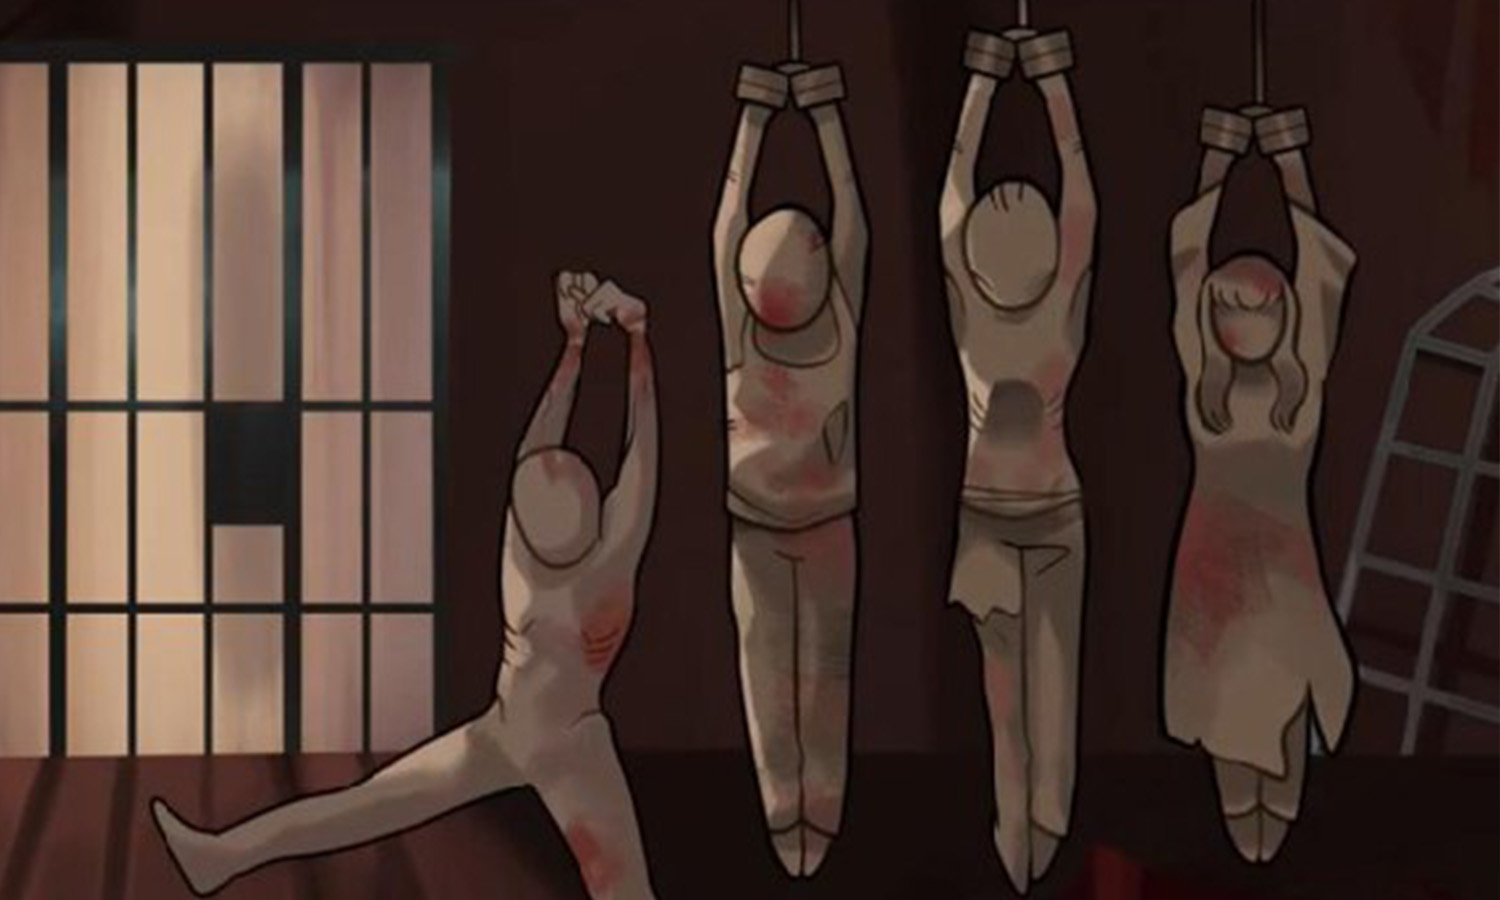 تعبيرية لتعذيب المعتقلين في سجون النظام السوري (رابطة عائلات قيصر)